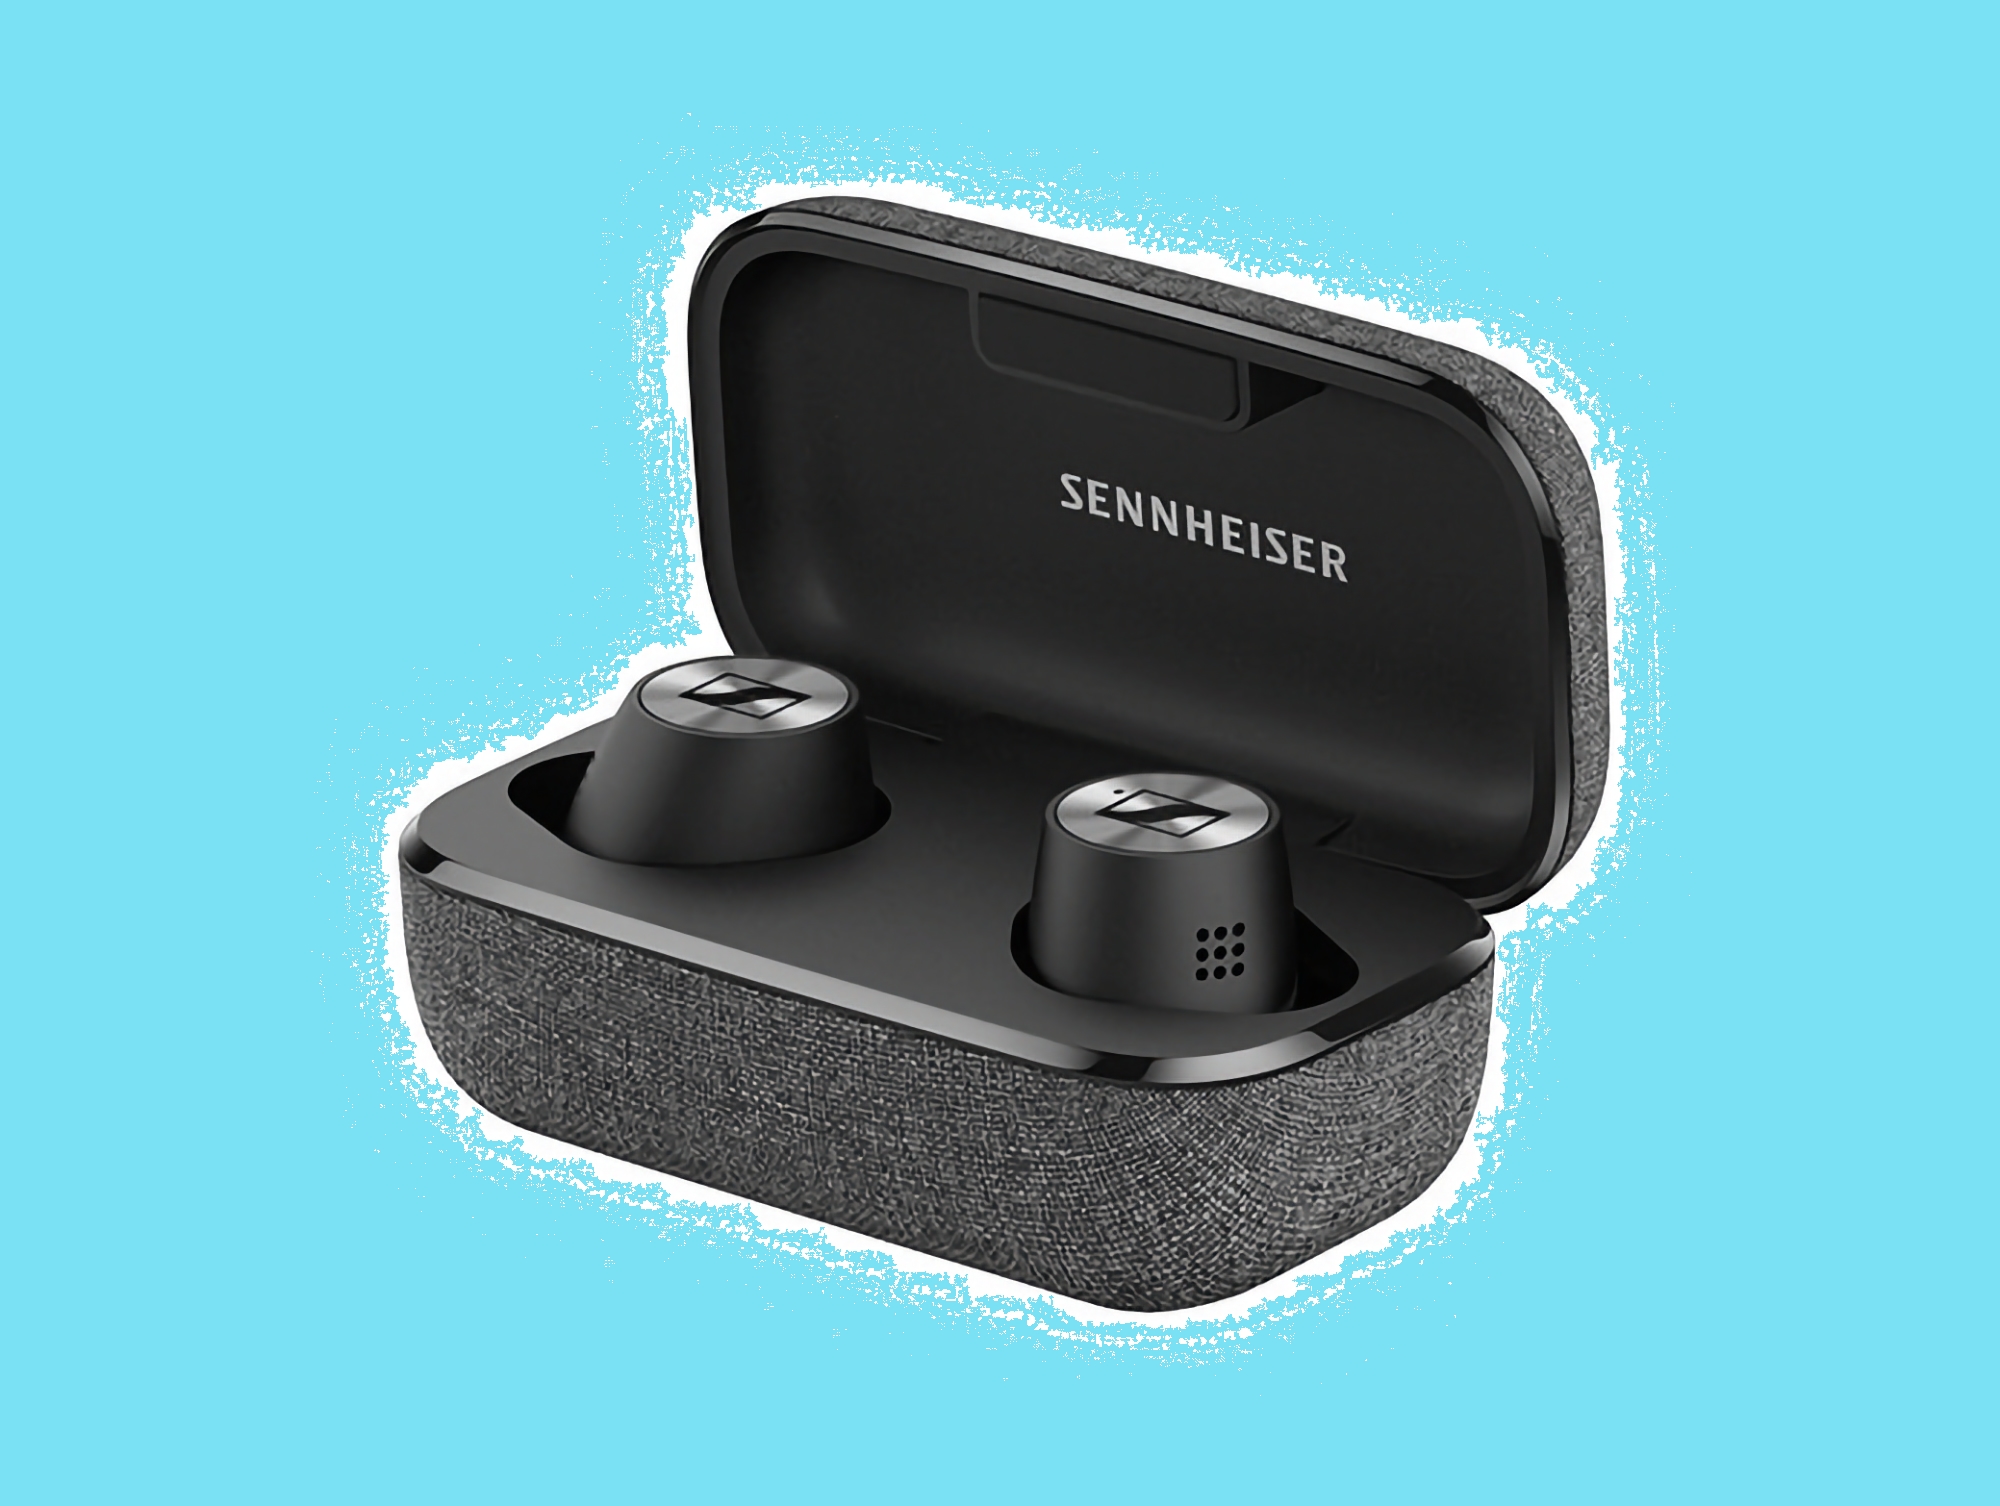 57% zniżki: Sennheiser Momentum True Wireless 2 dostępne na Amazon w promocyjnej cenie